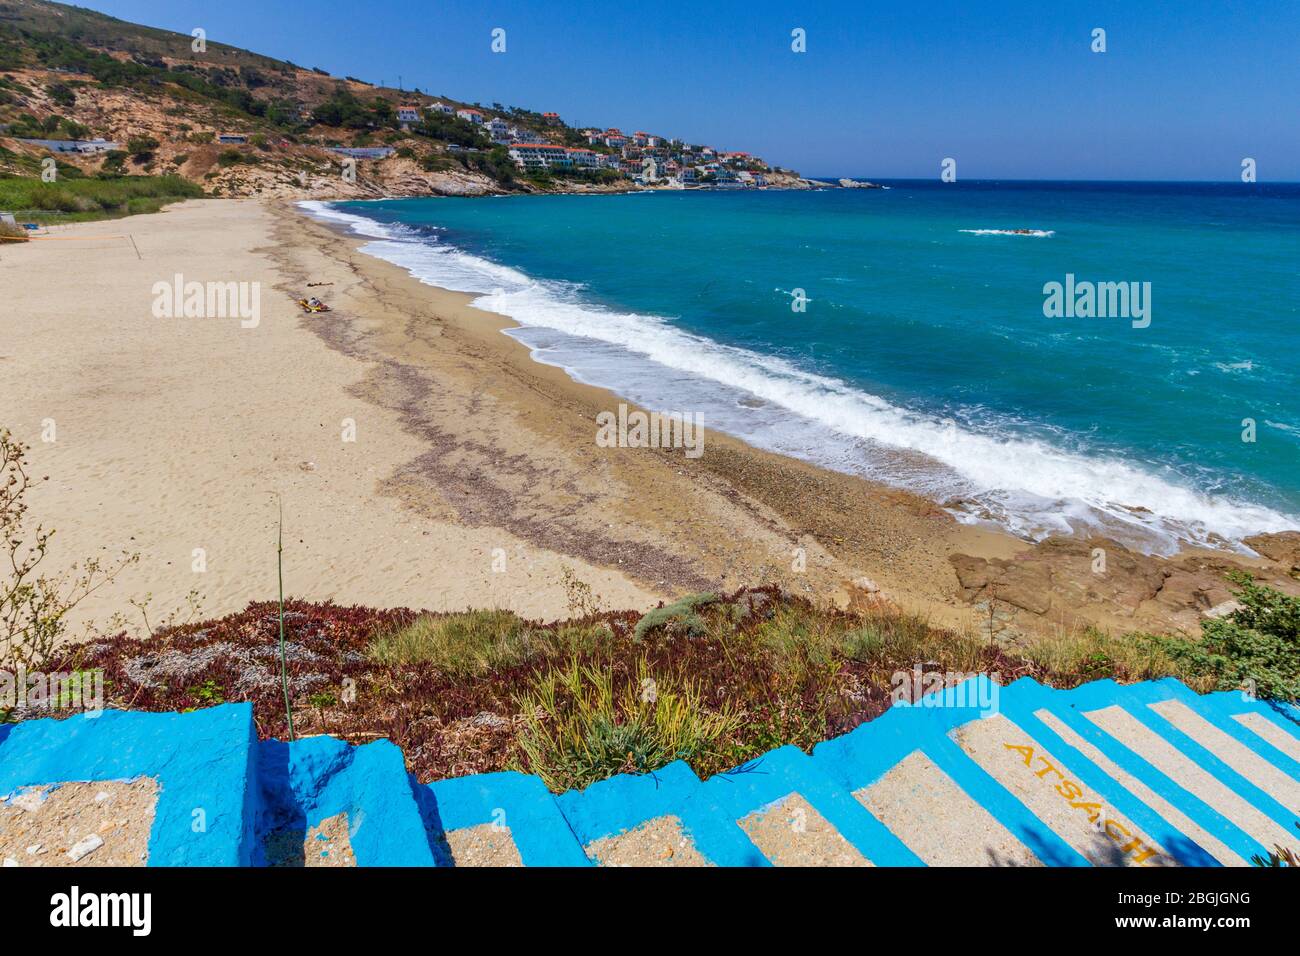 Strand Livadi, direkt bei der Stadt Armenistis, in Ikaria (oder Ikaria) Insel, in der Ägäis, Griechenland, Europa. Stockfoto